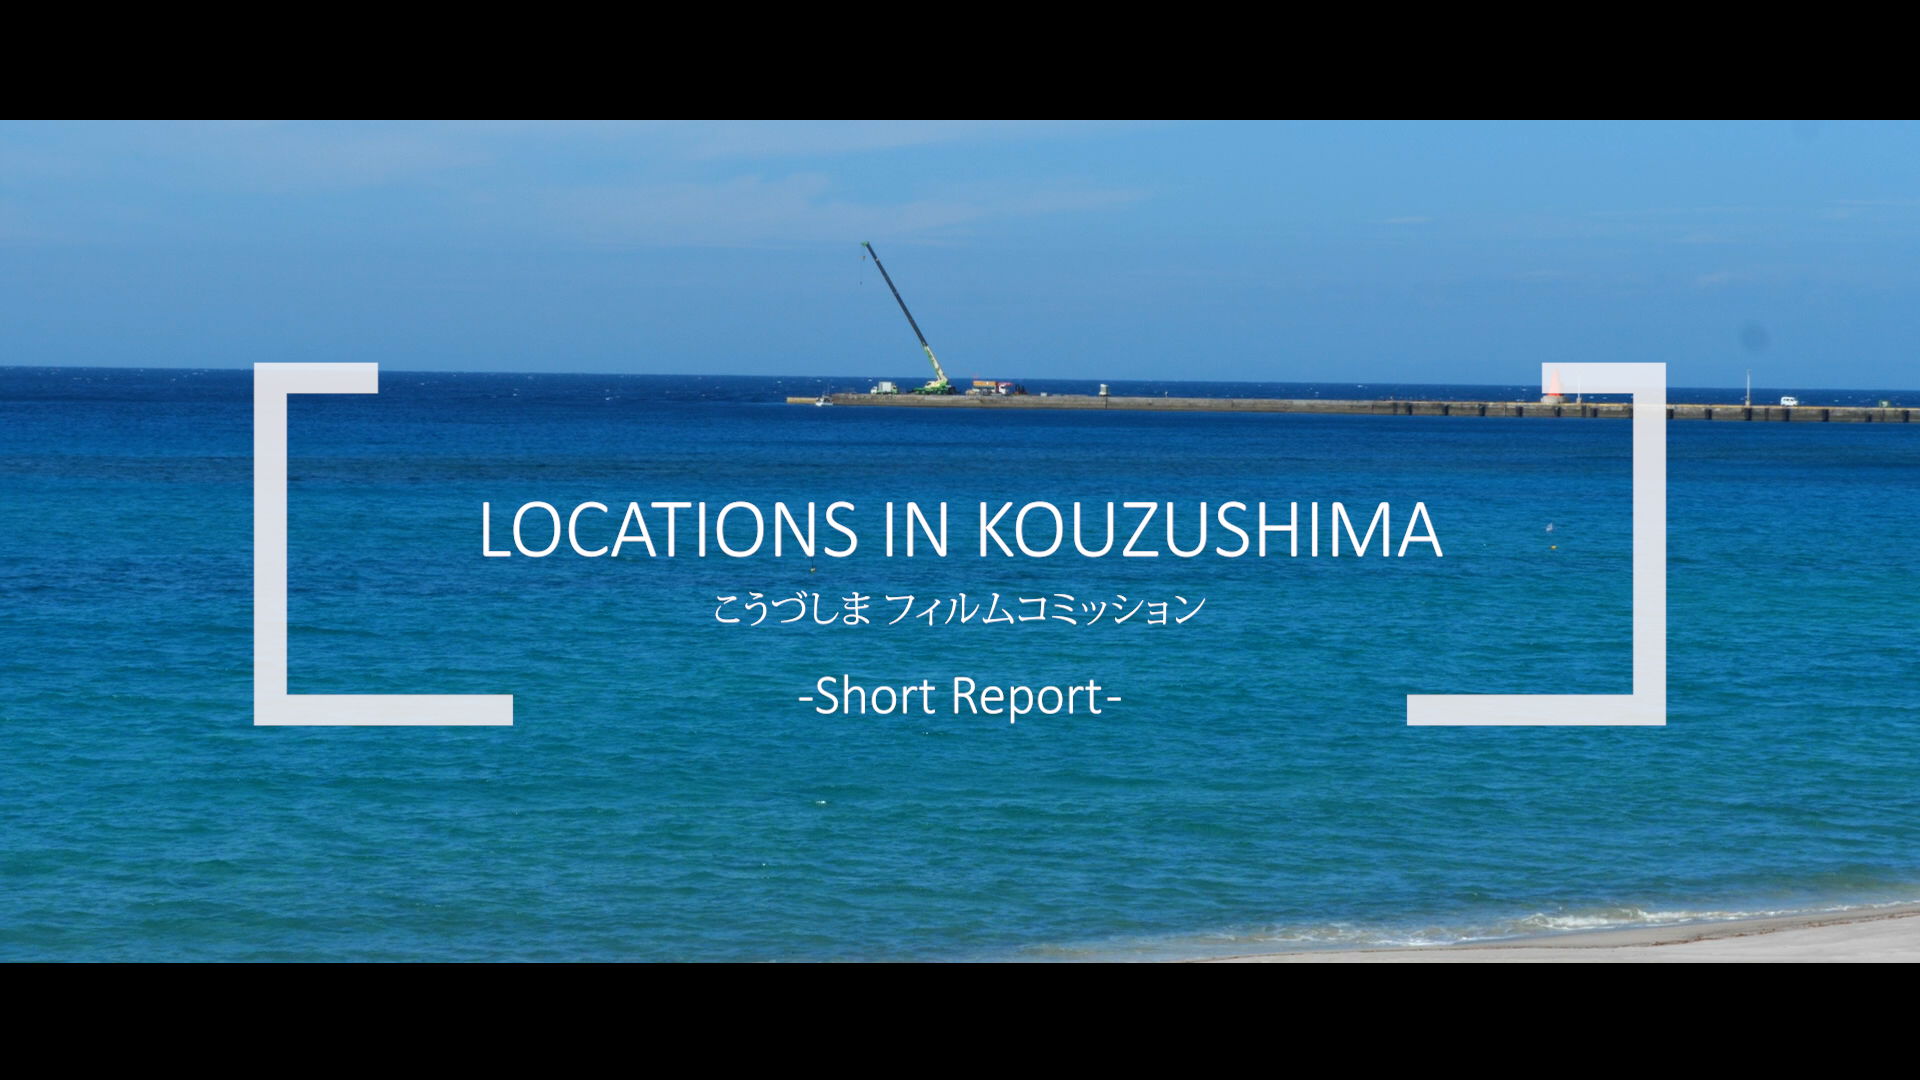 TLB Channel「LOCATIONS IN KOUZUSHIMA 」こうづしまフィルムコミッション」